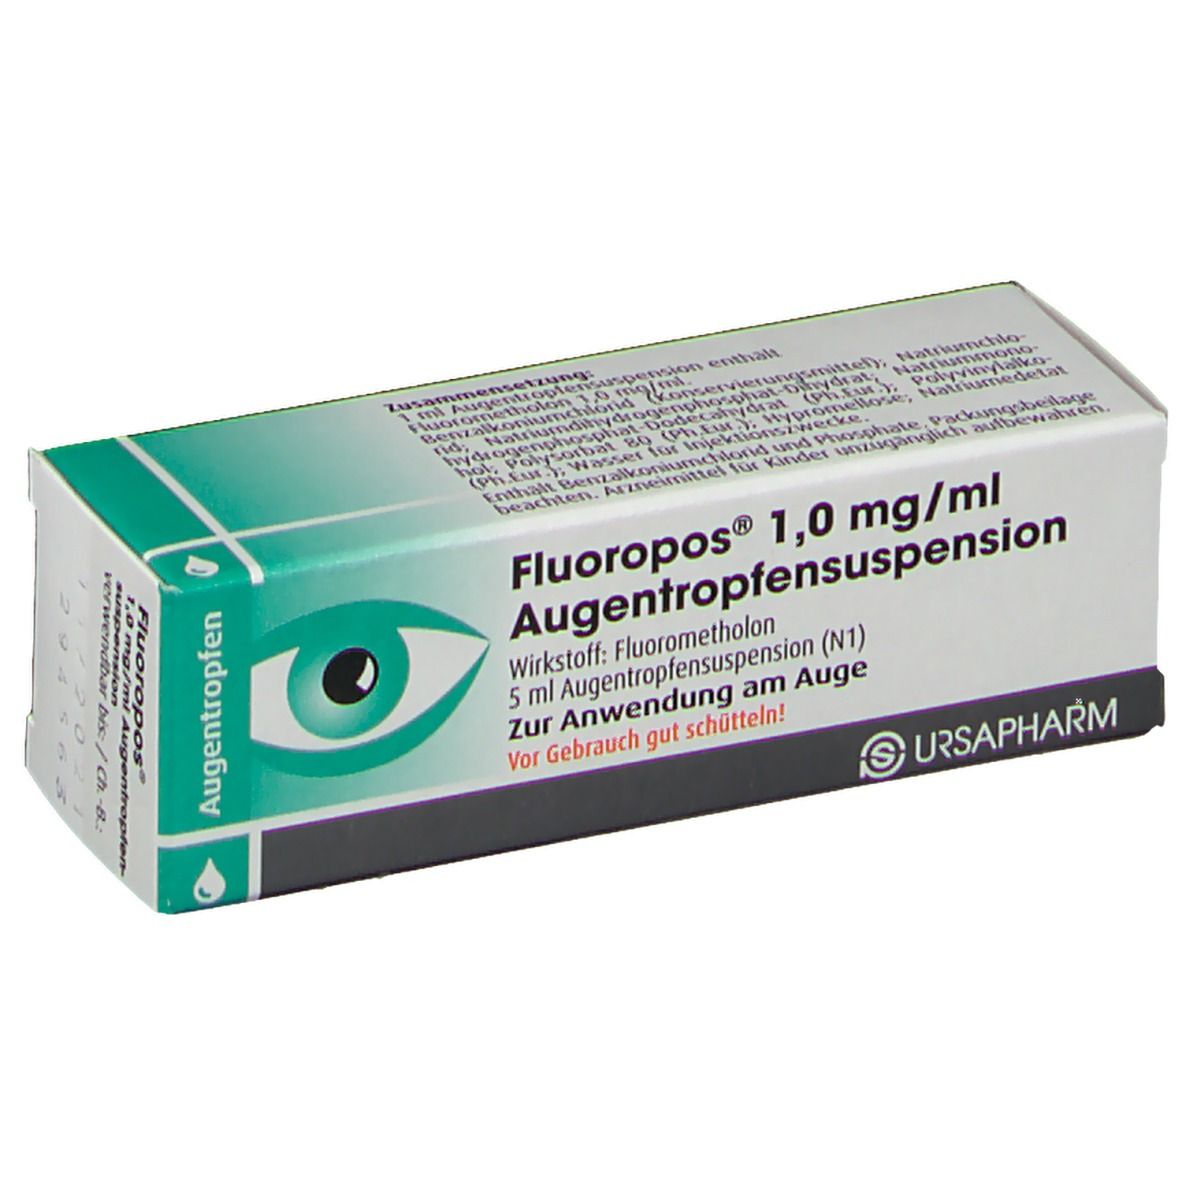 Fluoropos®